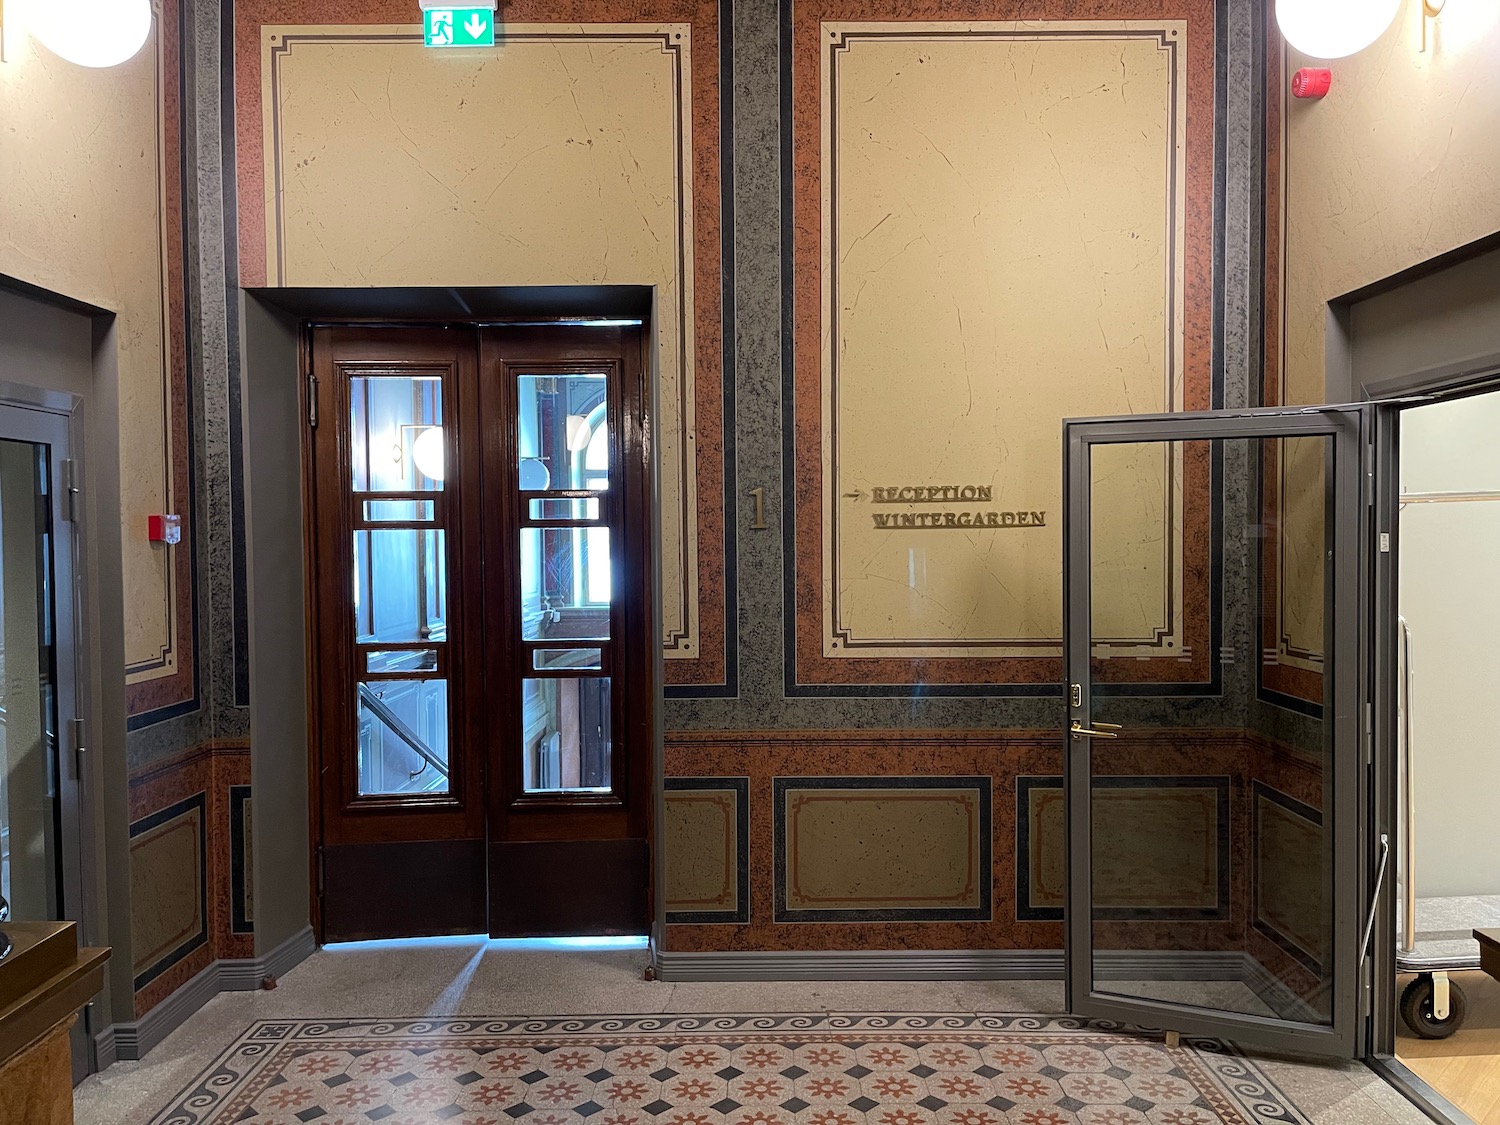 a door and glass door in a building